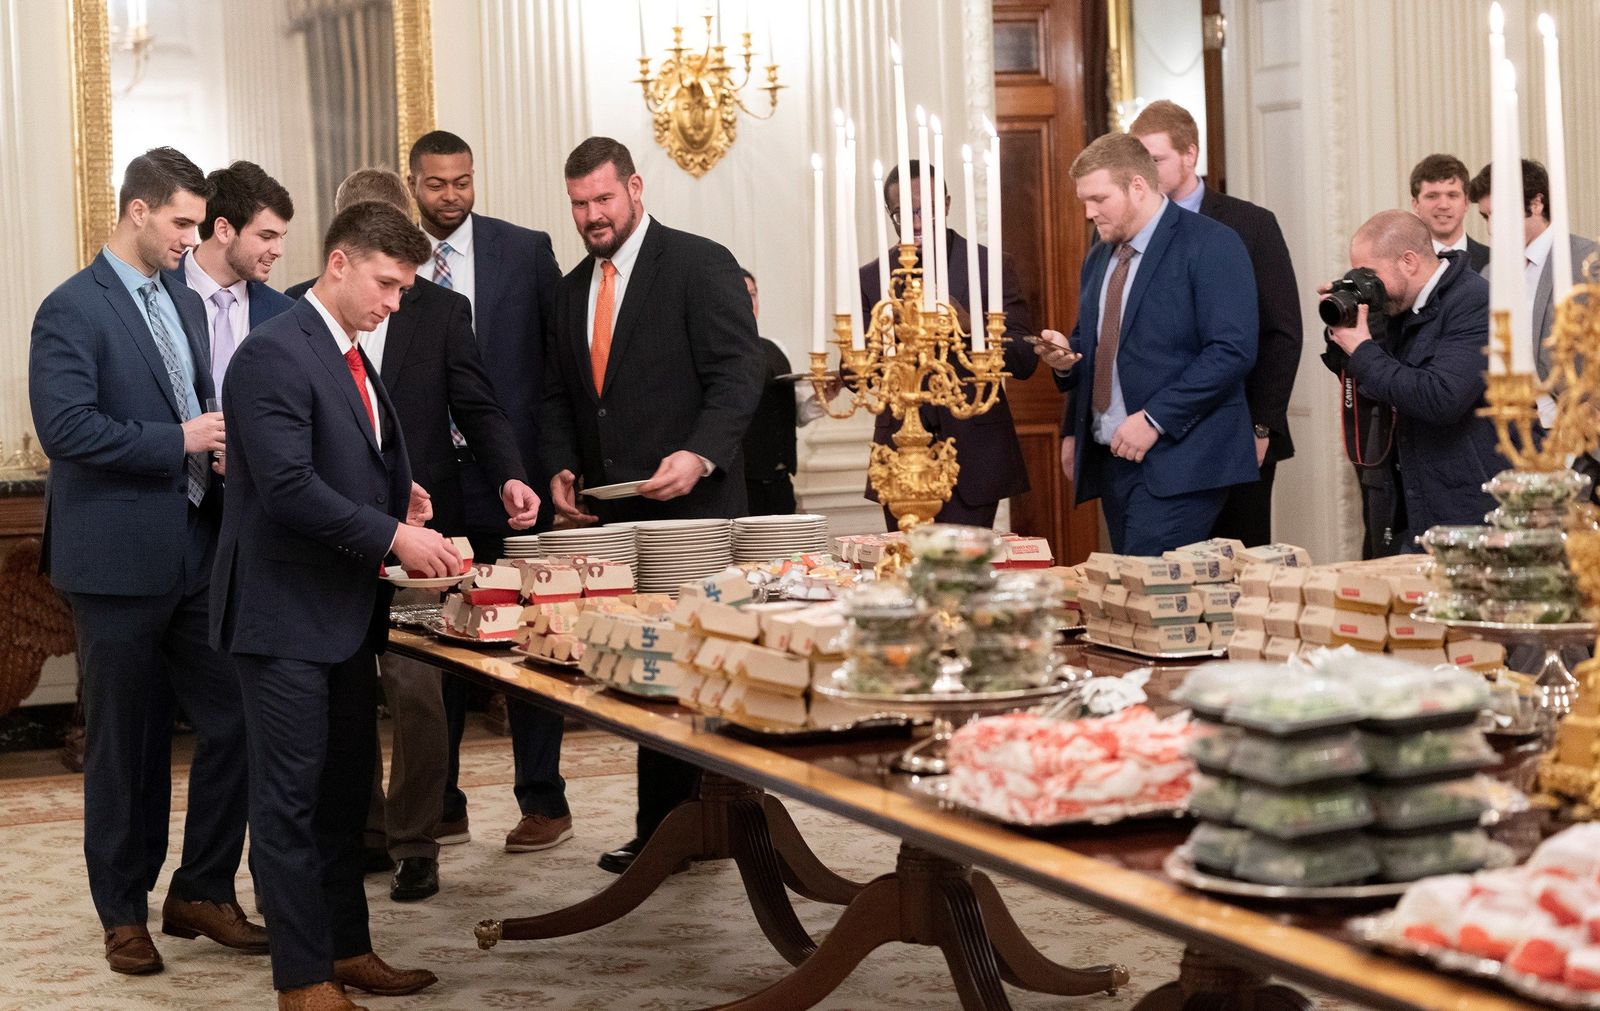 Los miembros del equipo de futbol americano Clemson Tigers, campeones nacionales universitarios, se preparan para cenar comida rápida servida por el presidente de los Estados Unidos, Donald J. Trump.